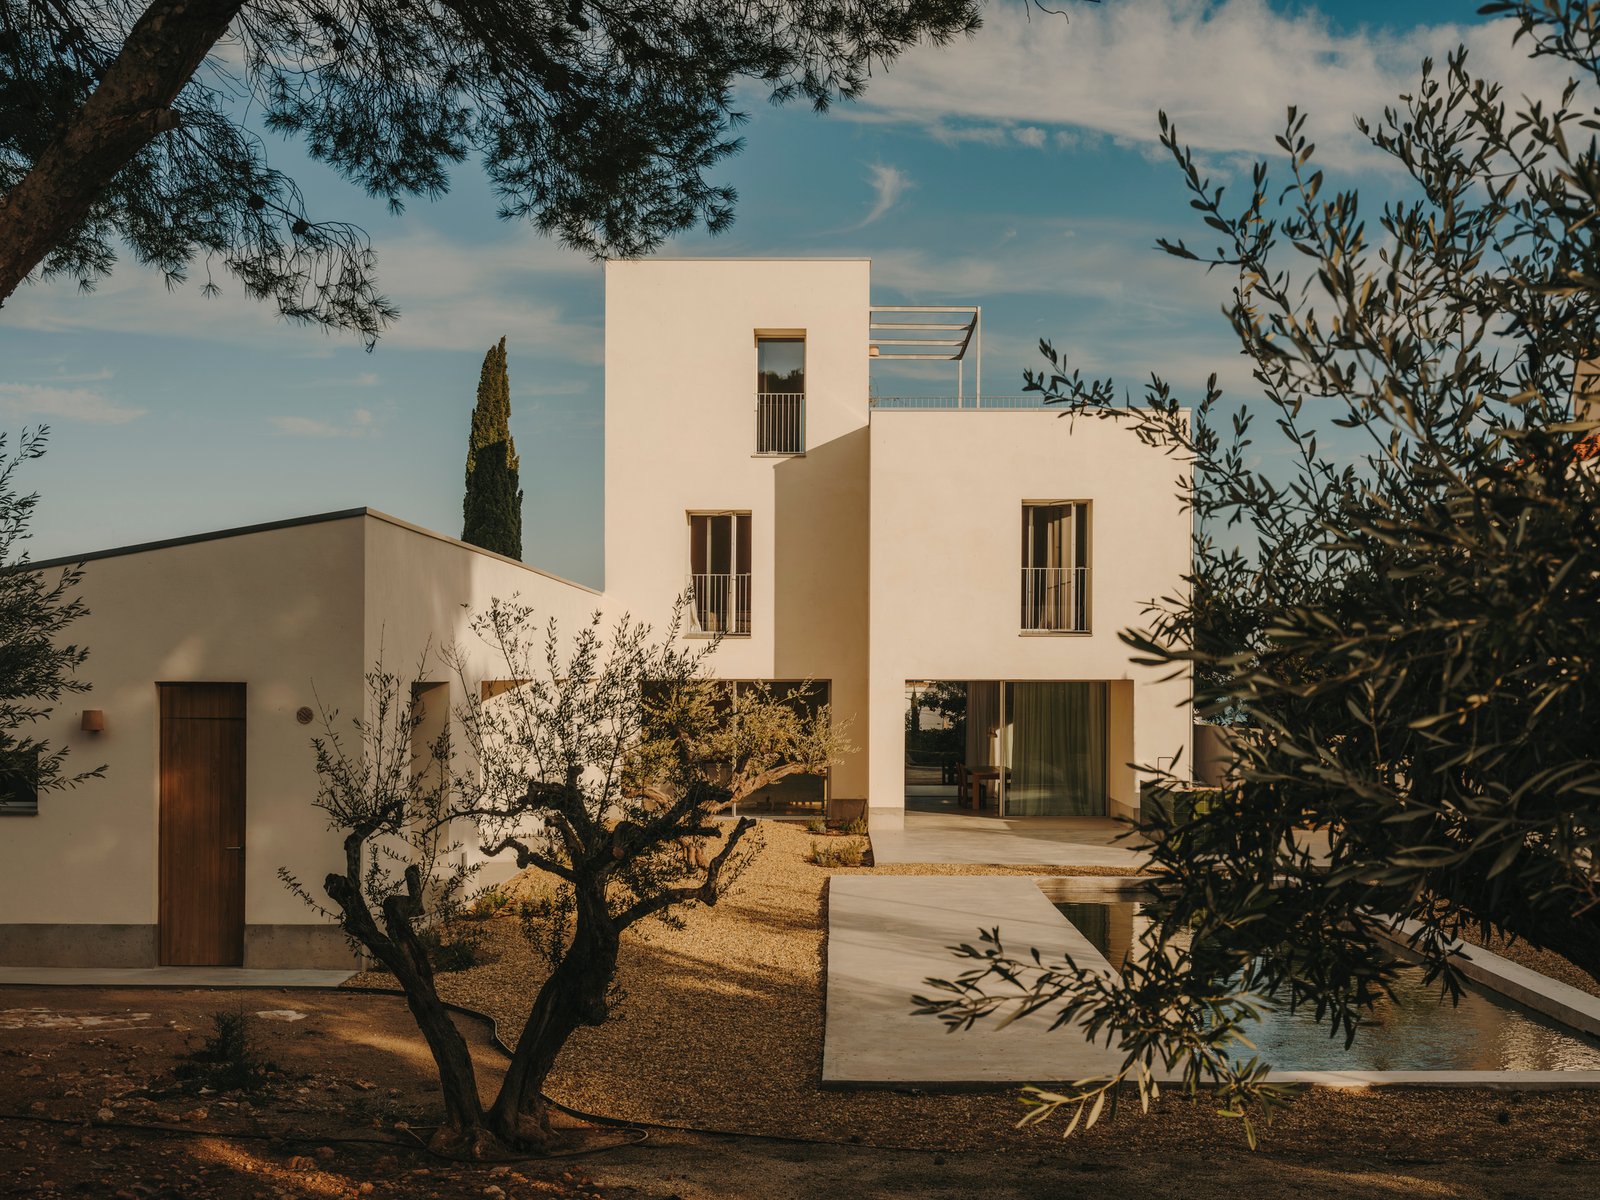 Casa TD / Skye Maunsell Studio + Jordi Veciana + Juan Gurrea Rumeu